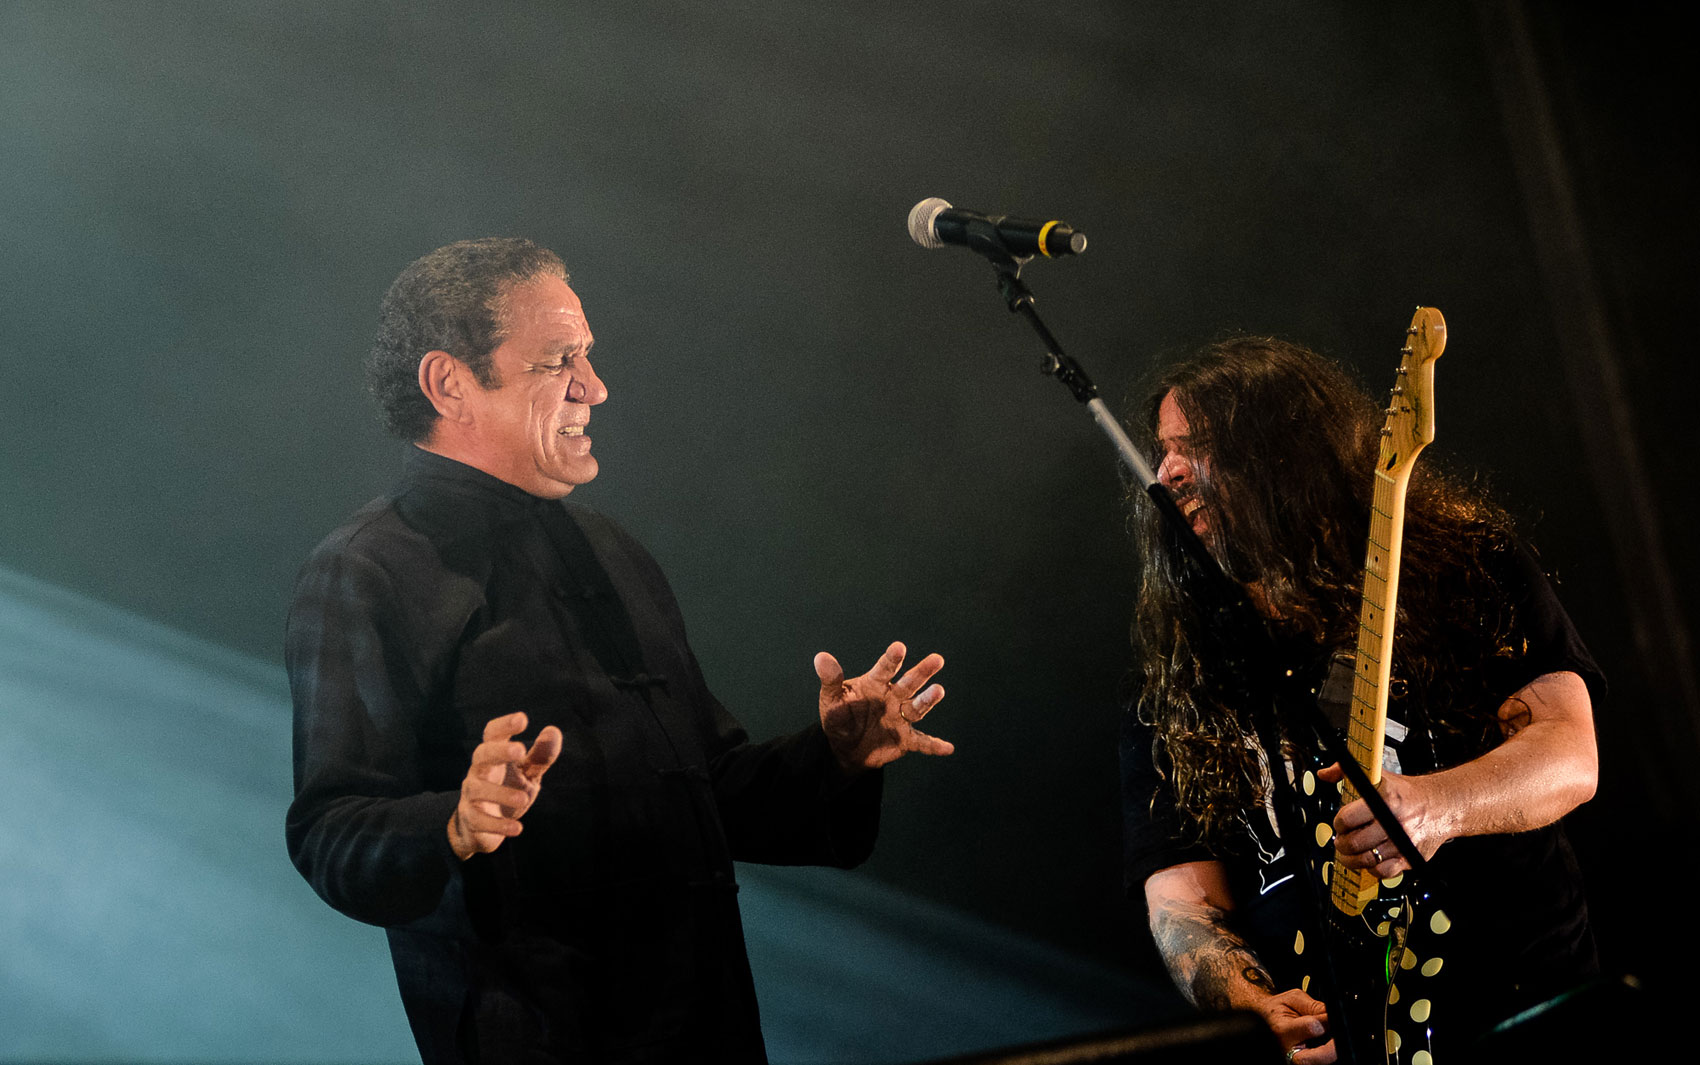  Sepultura e Zé Ramalho fizeram o último show no Palco Sunset neste Rock in Rio; apresentação começou às 19h30 deste domingo (22).